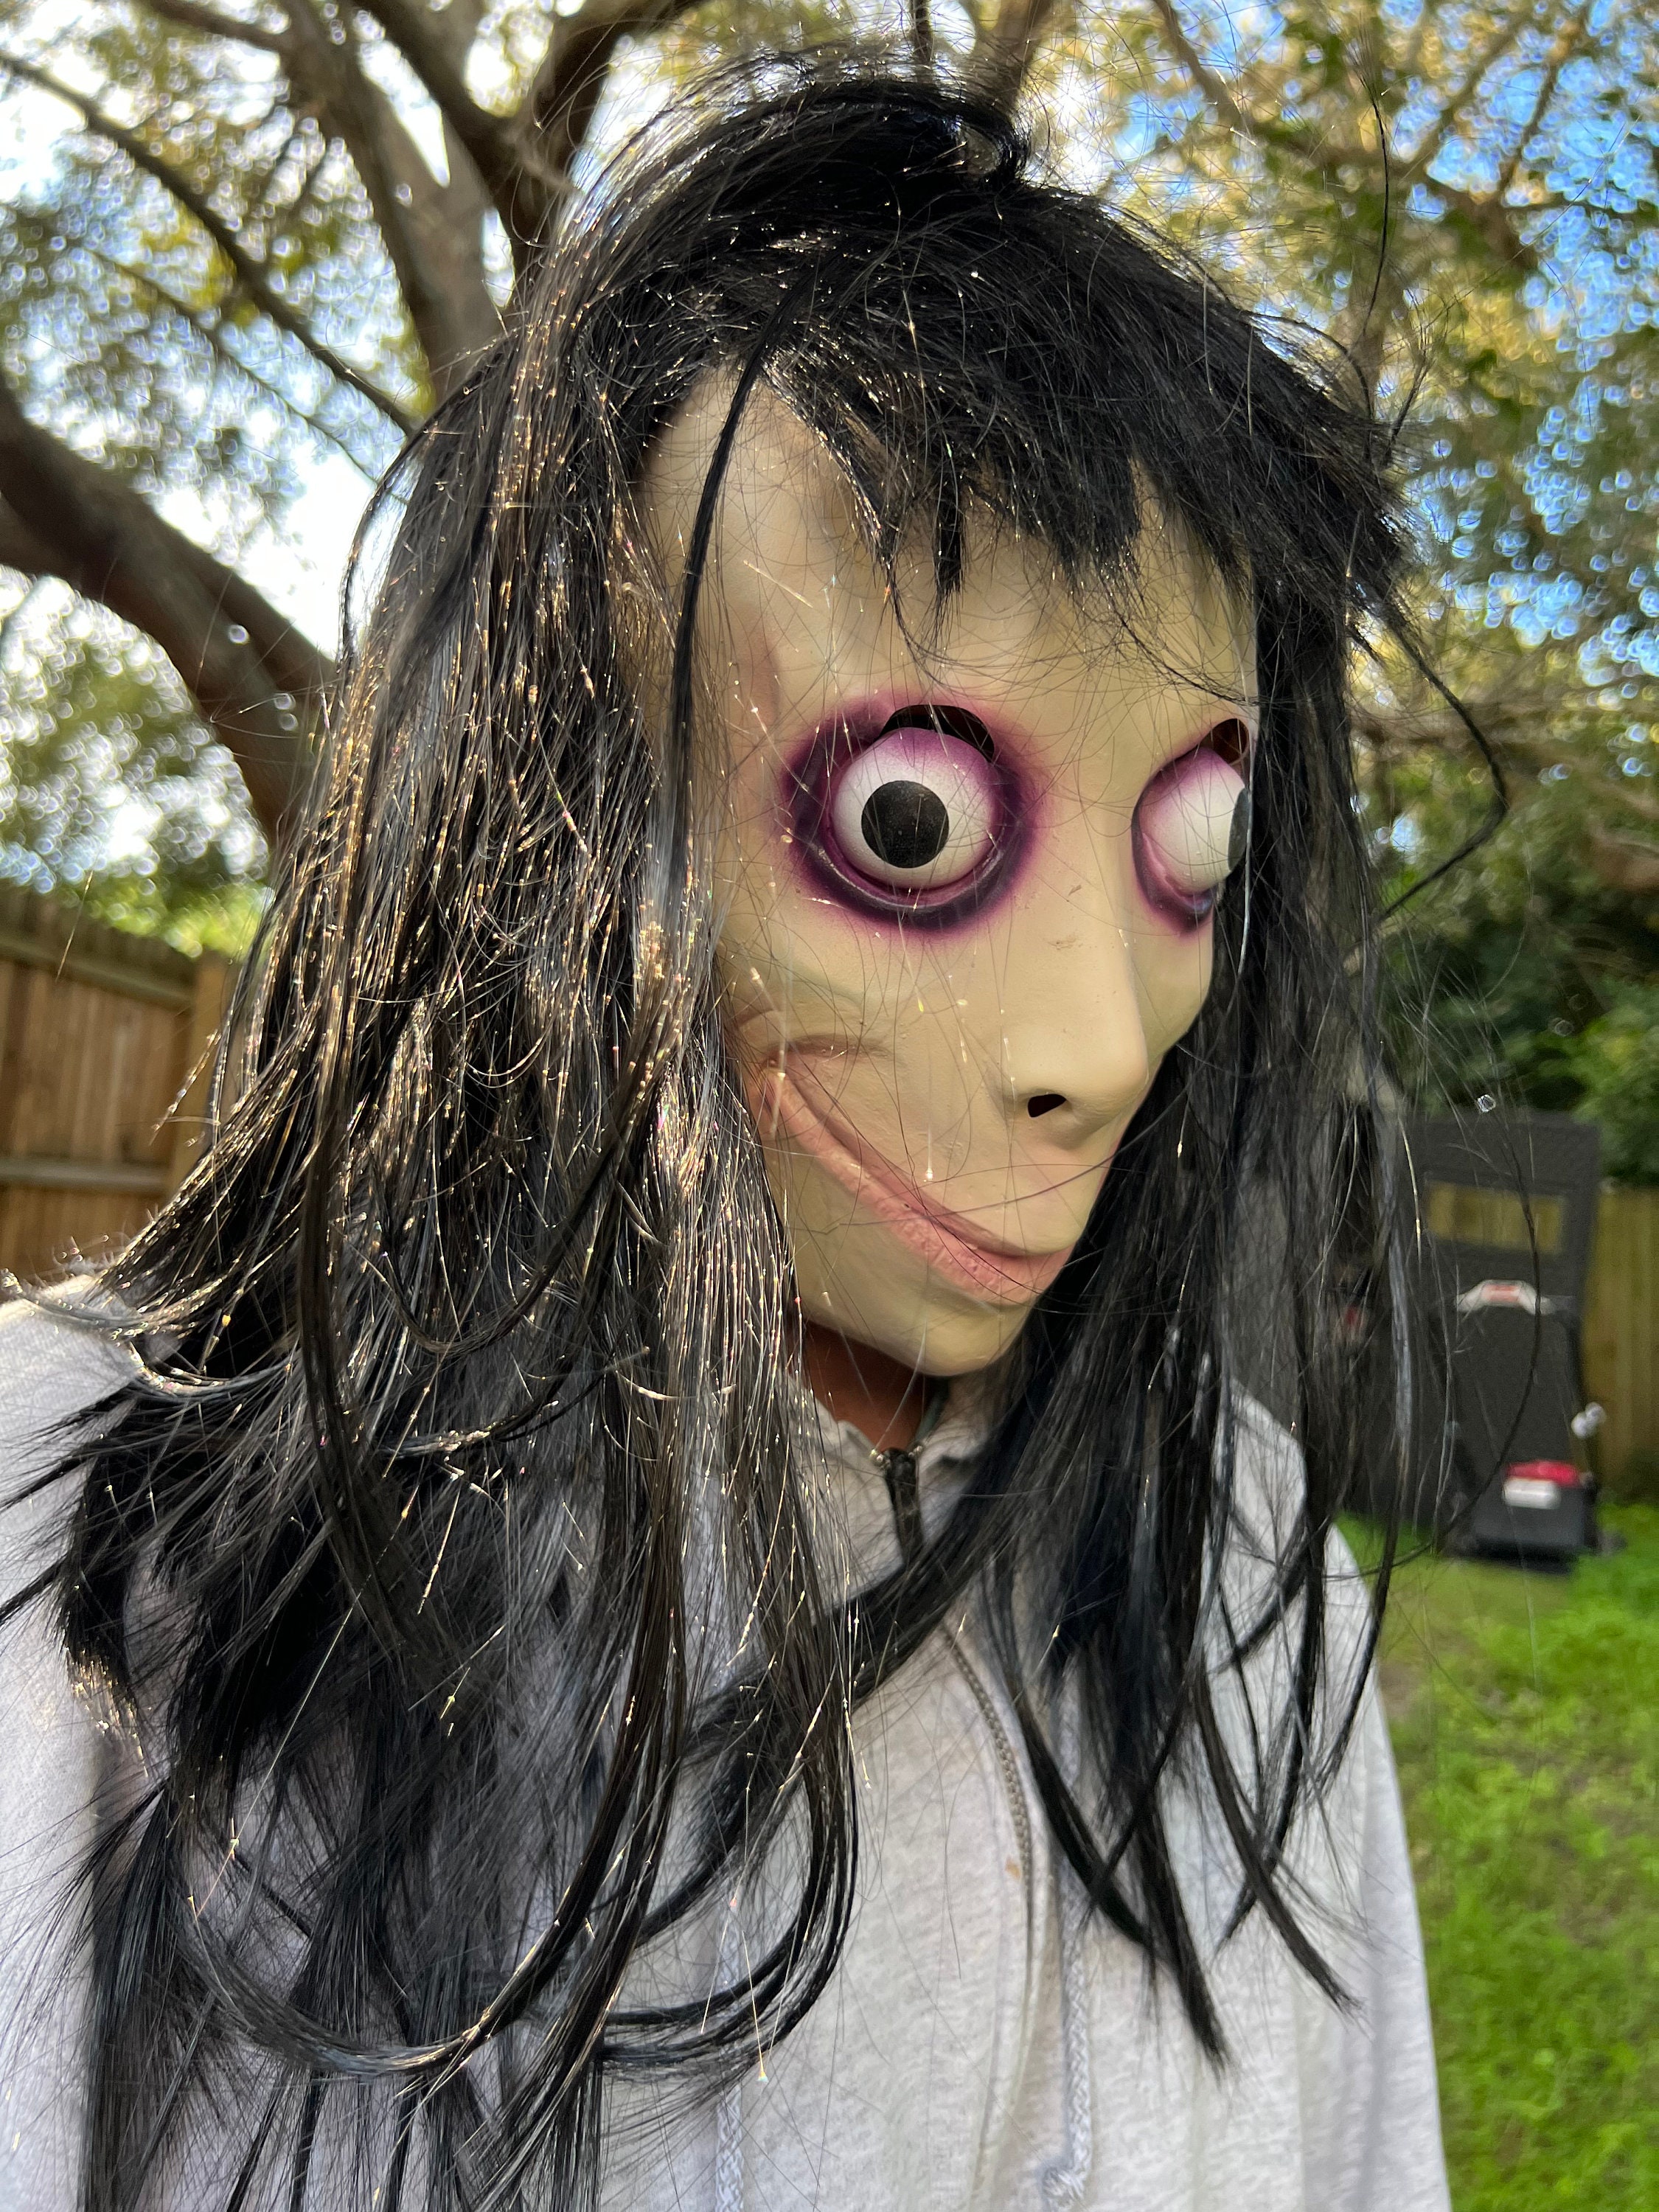 Momo Masque Jeux Effrayant Adulte Halloween Déguisement Fête Accessoires  Horreur